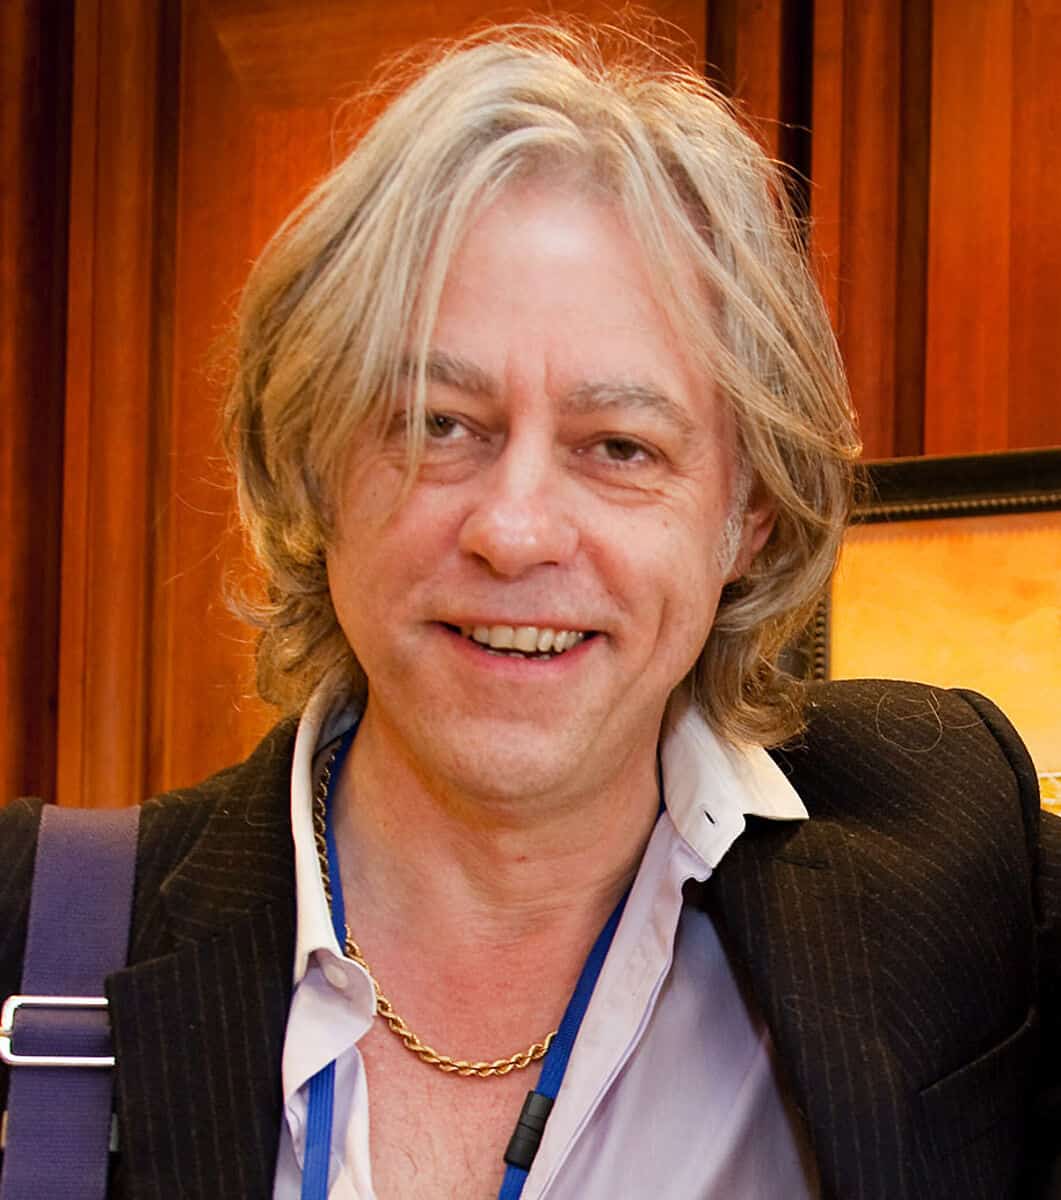 Bob Geldof Net Worth Details, Personal Info